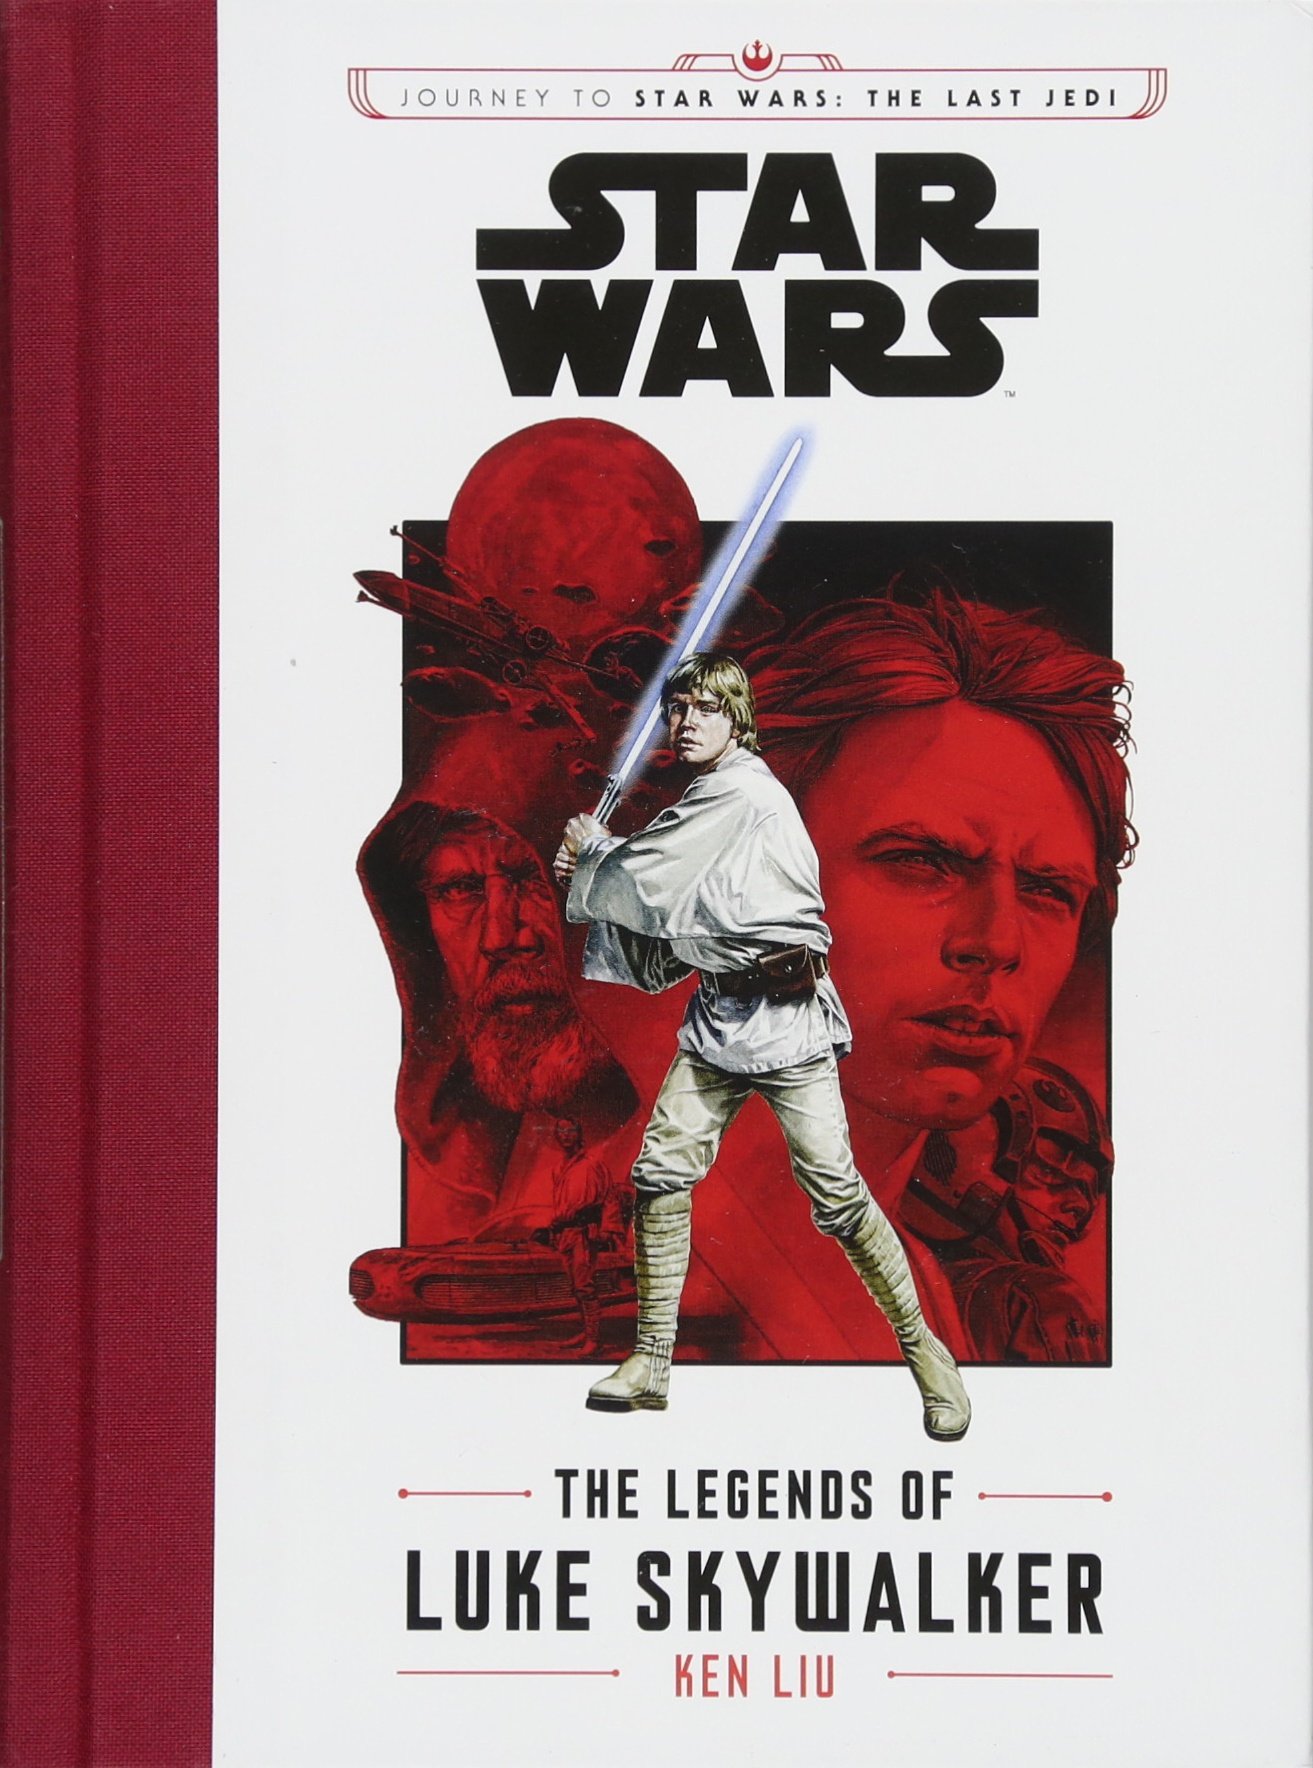 Star Wars: Journey to Star Wars: the Last Jedi - The Legends of Luke Skywalker